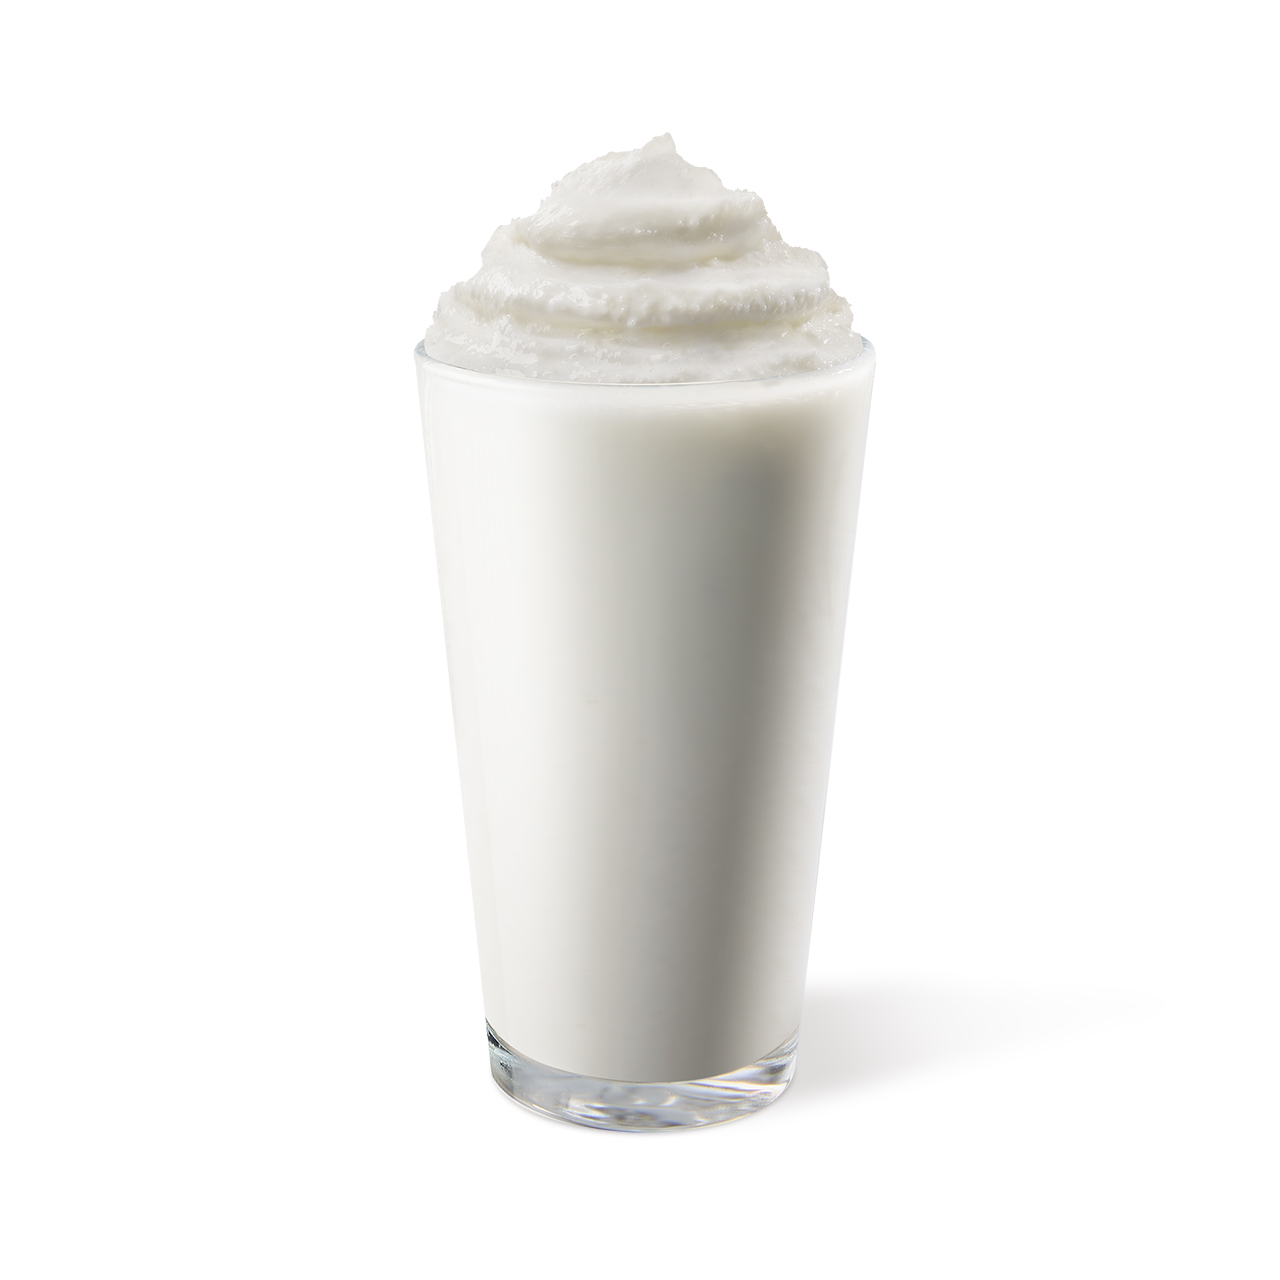 바닐라 밀크쉐이크 (Vanilla Milkshake)